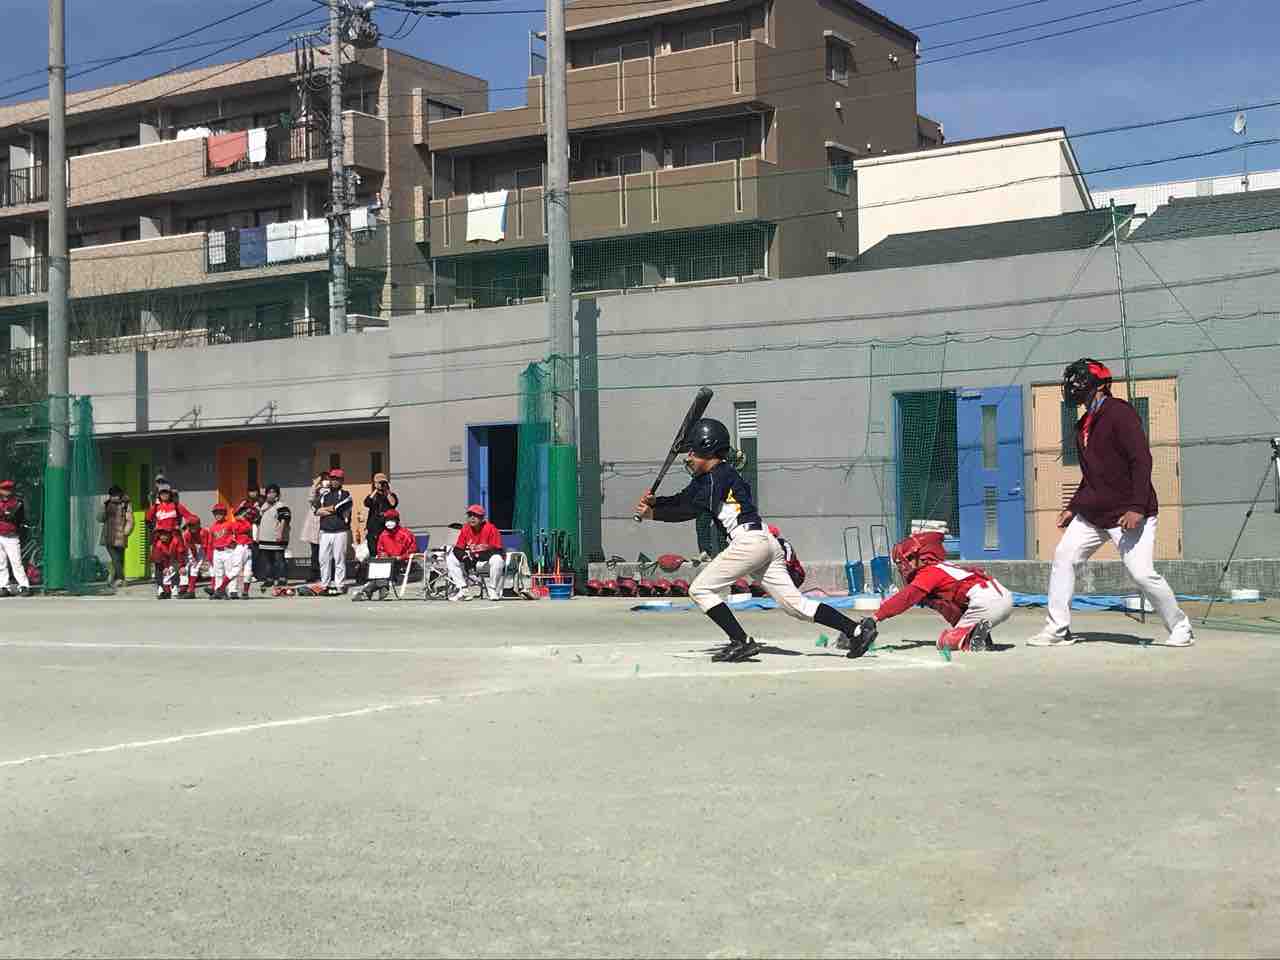 2月24日am Aチーム練習試合vs北親会レッドキングス 舟渡ベースボールクラブ 板橋区 学童軟式野球